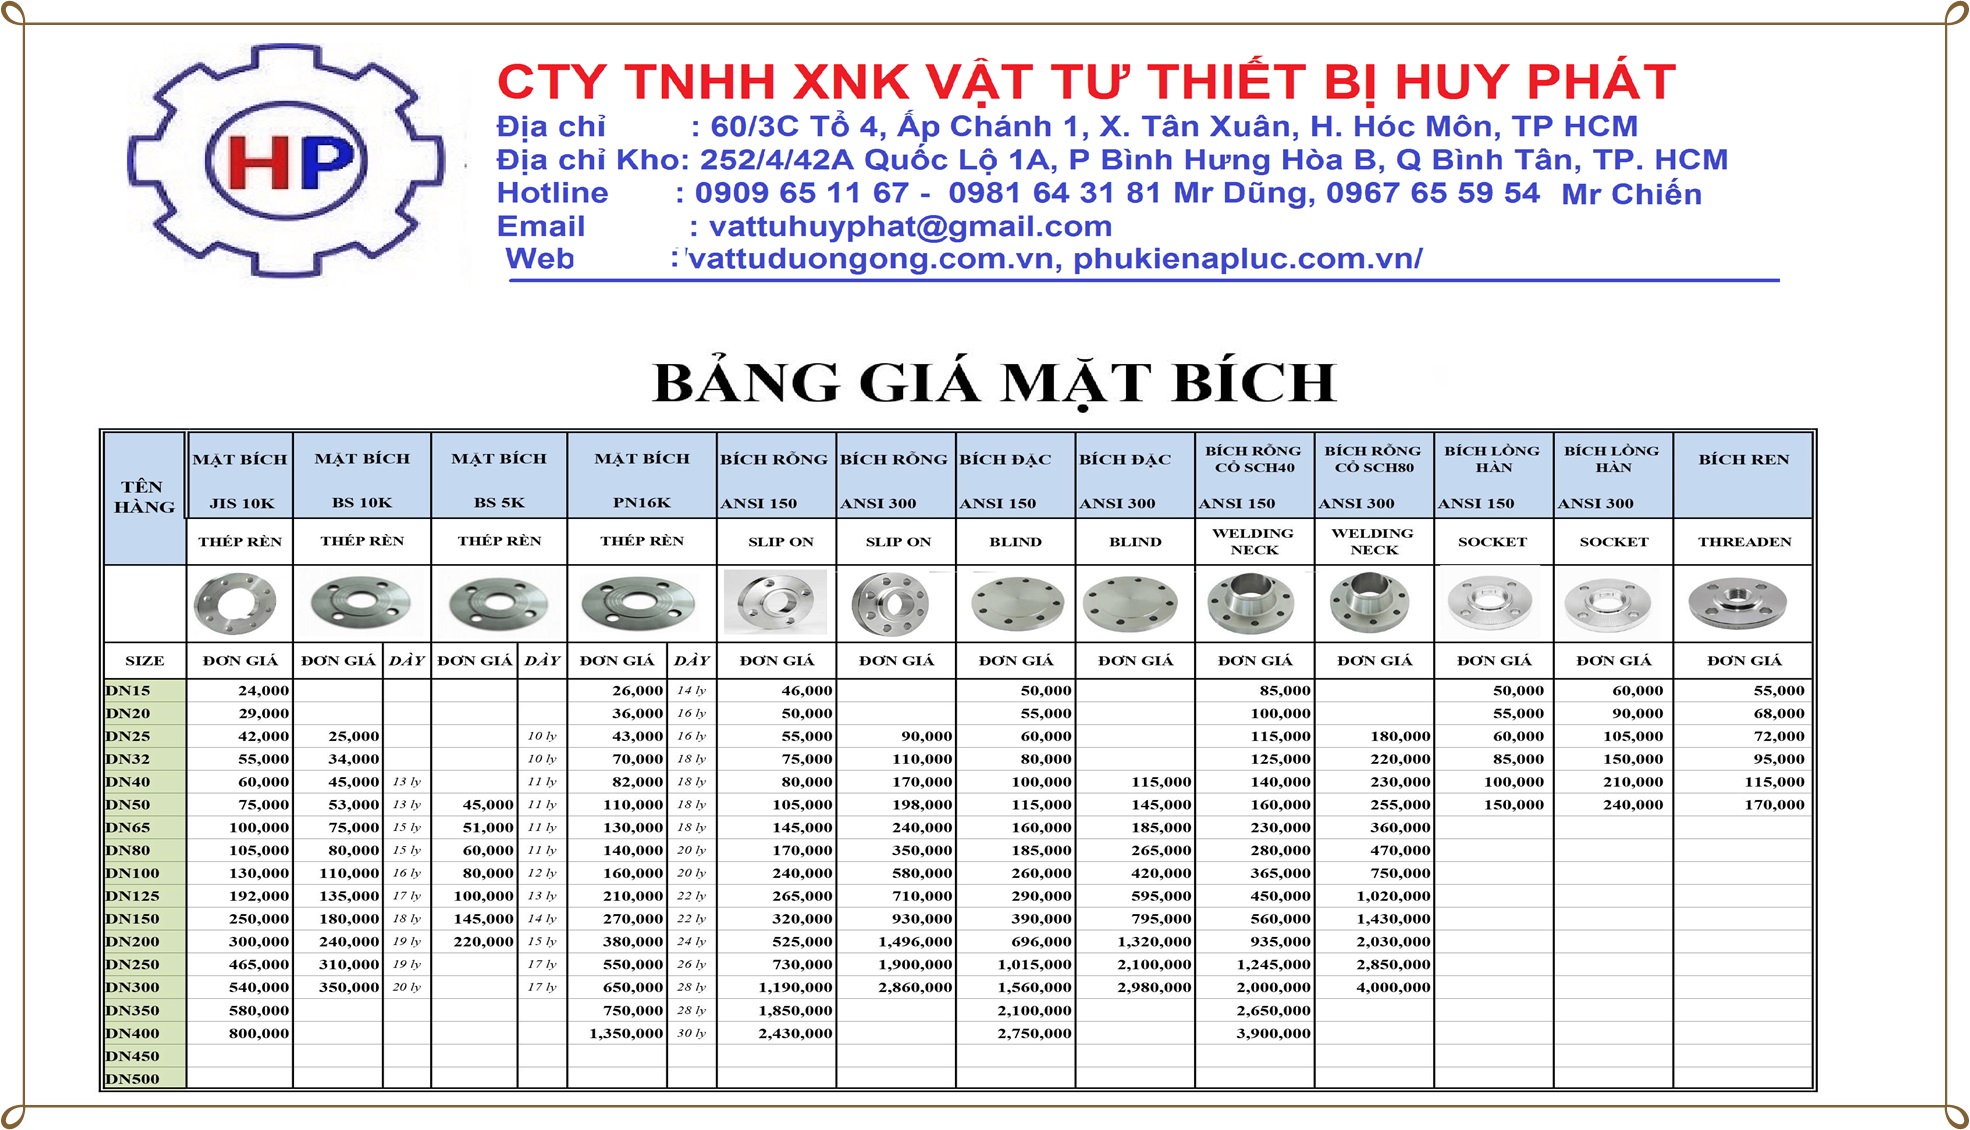 Báo Giá mặt bích nhanh, chính xác, tốt, rẻ nhất Việt Nam